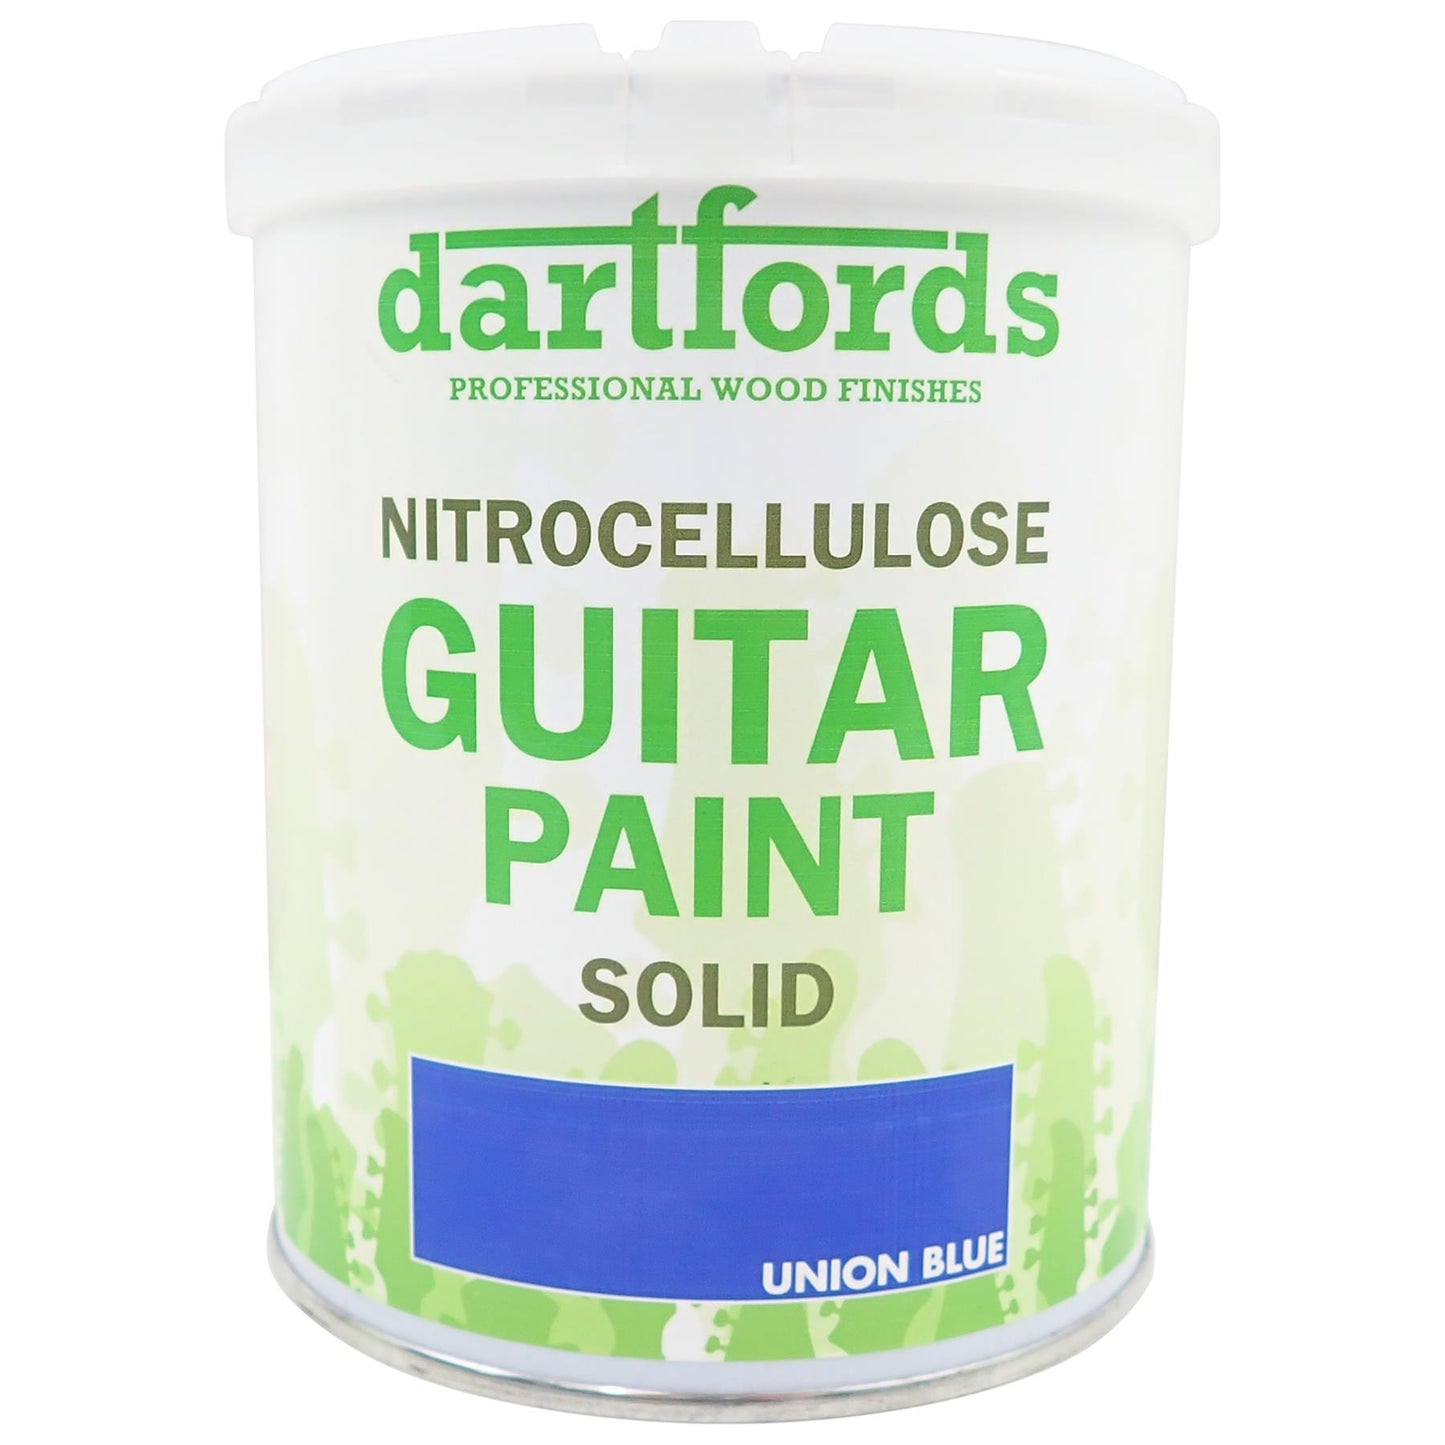 dartfords Union Blue Nitrocellulose Guitar Paint - 1 litre Tin